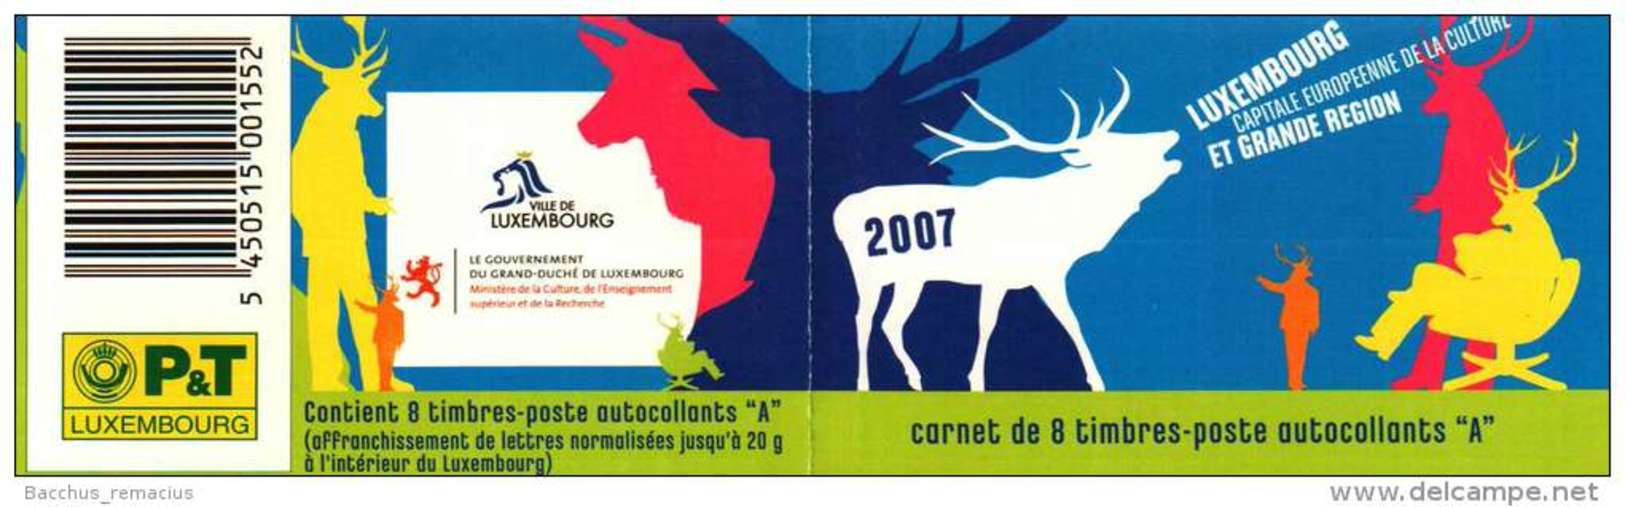 Luxembourg Et Grande Région  Carnet De 8 Timbres "A"  Autocollants Capitale Européenne De La Culture 2007 - Markenheftchen